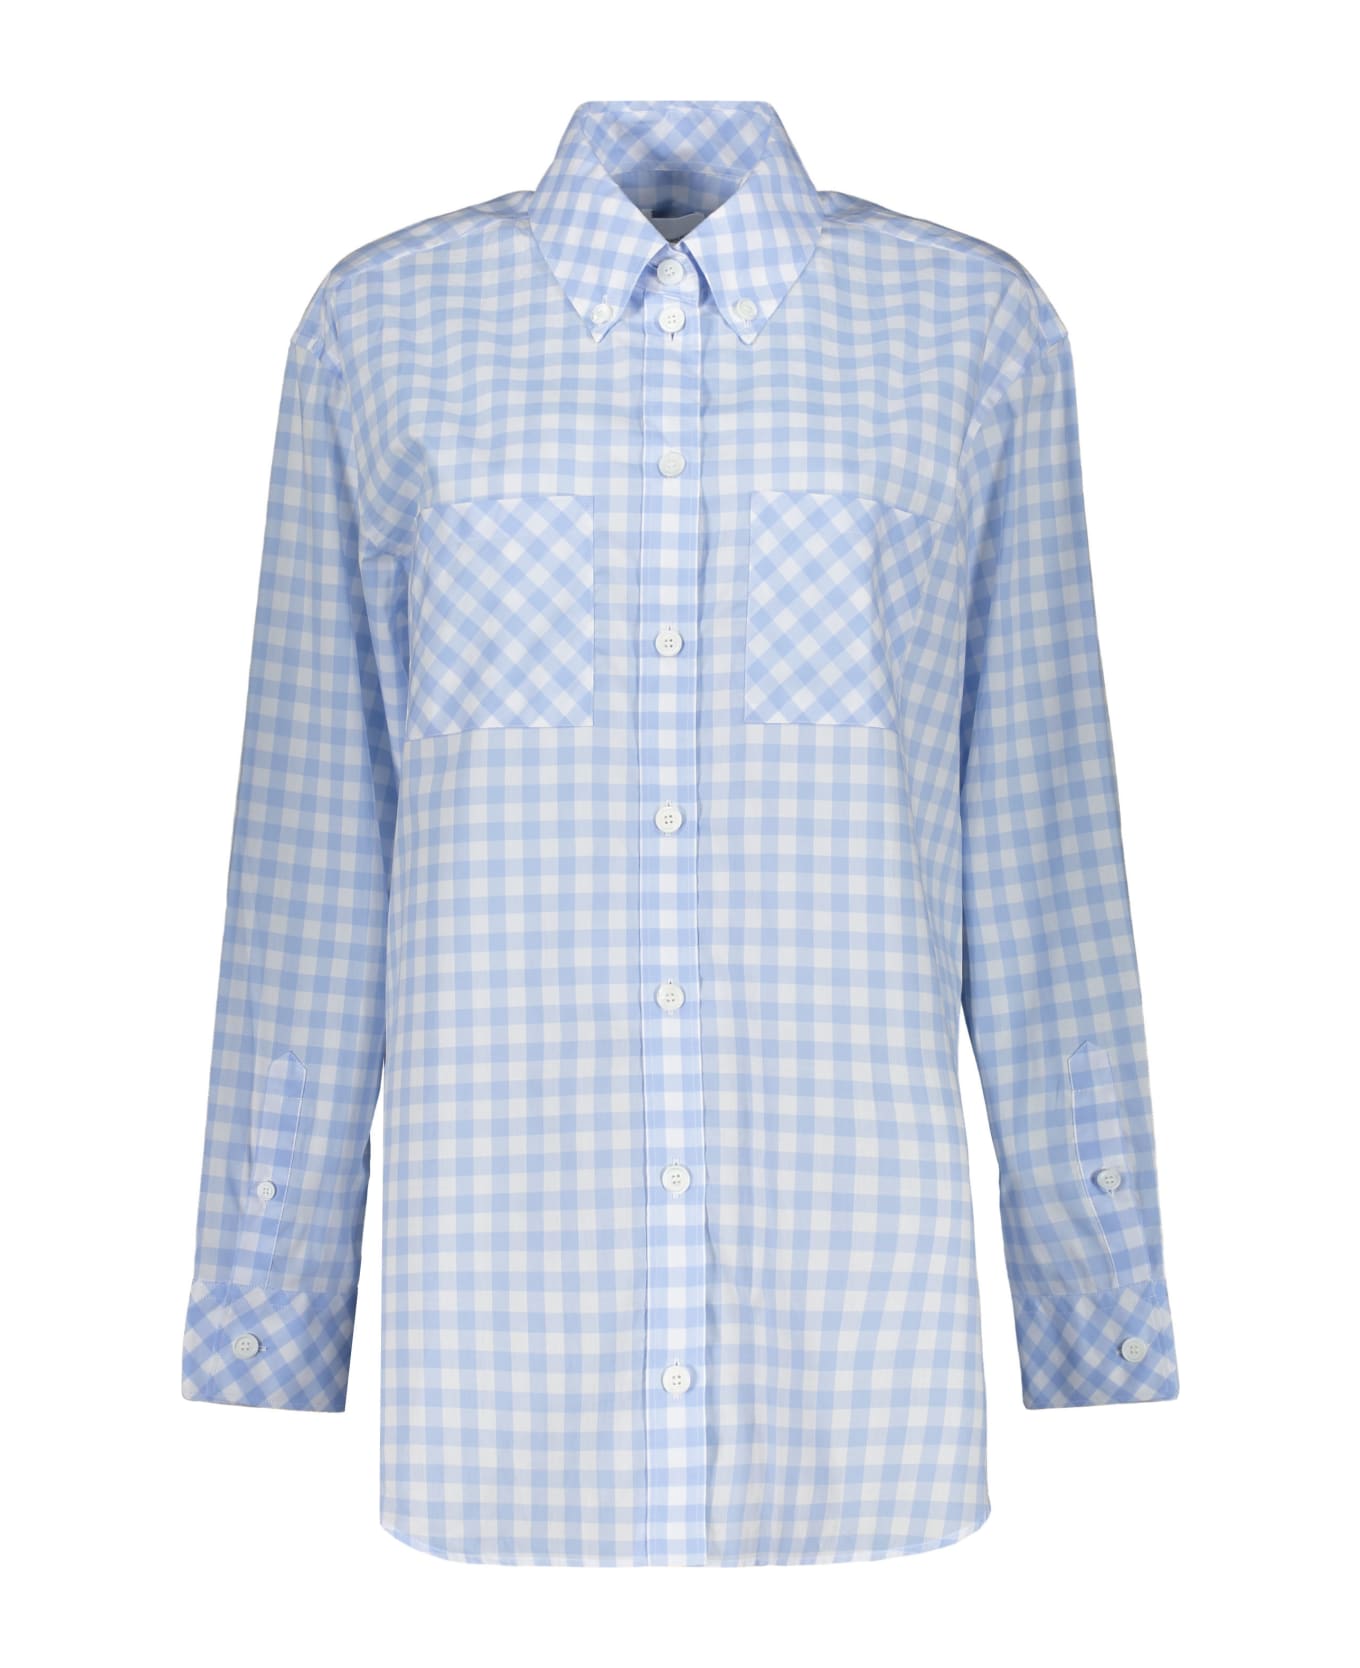 Burberry Cotton Shirt - Light Blue シャツ